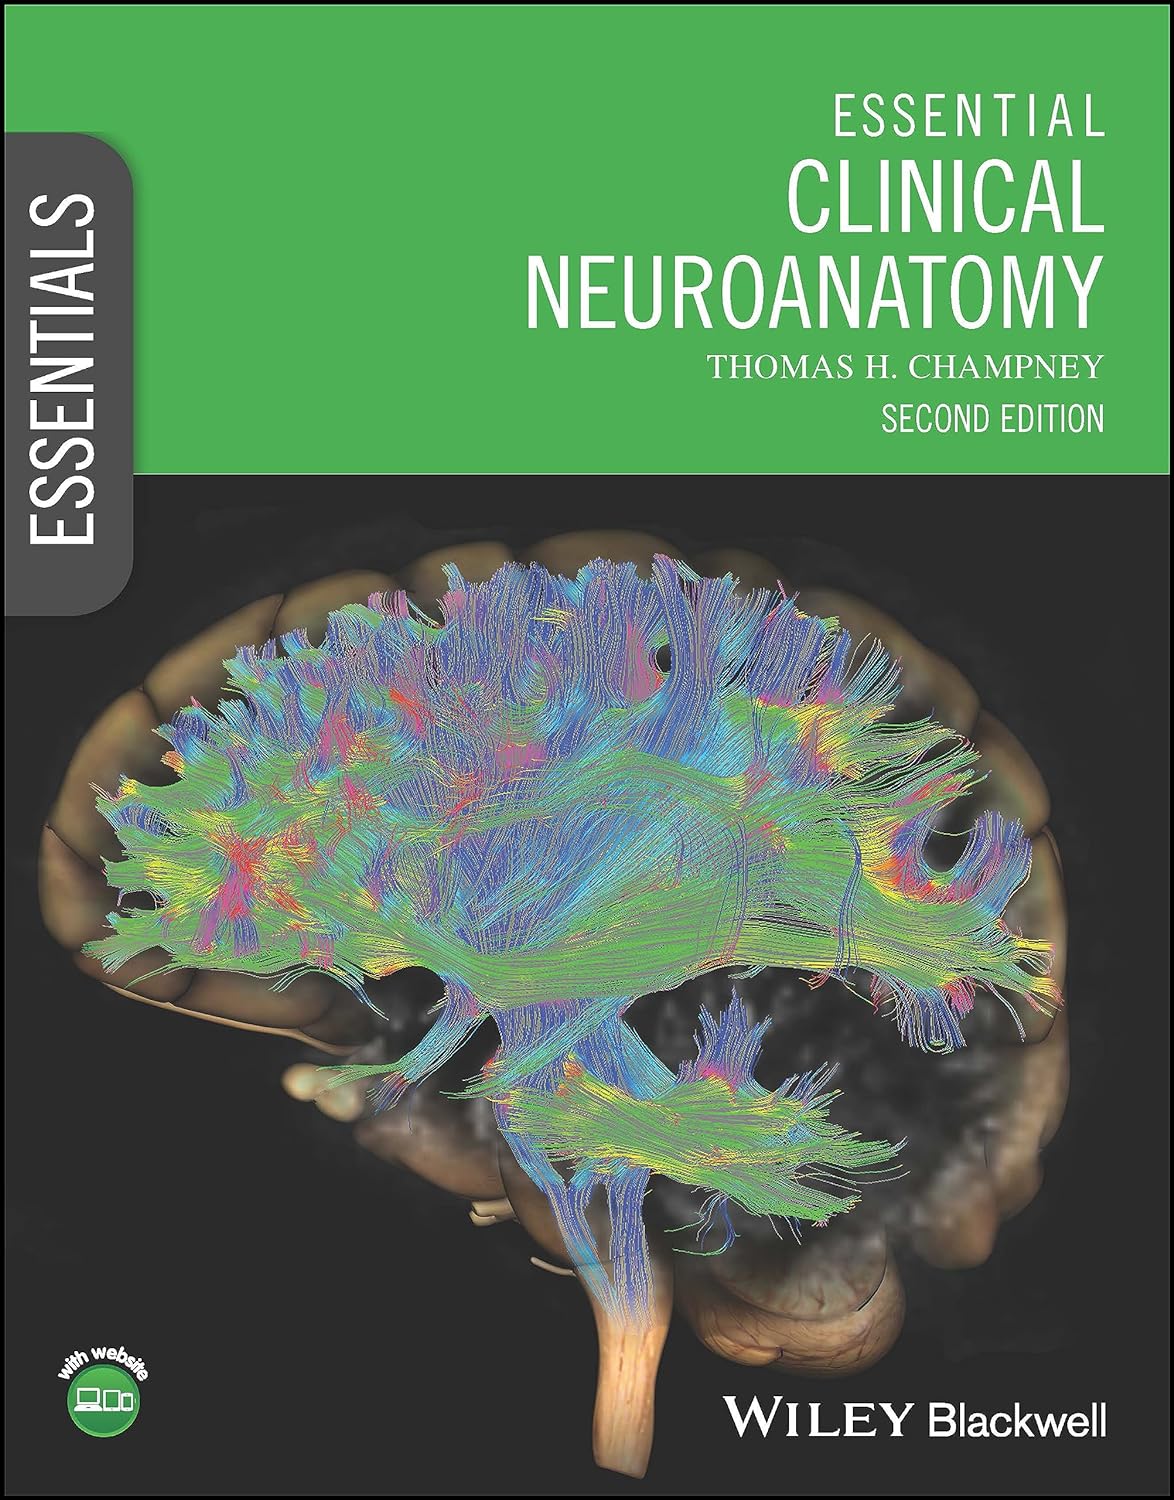 Essential-Clinical-Neuroanatomy-Essentials-2nd-Edition.jpg